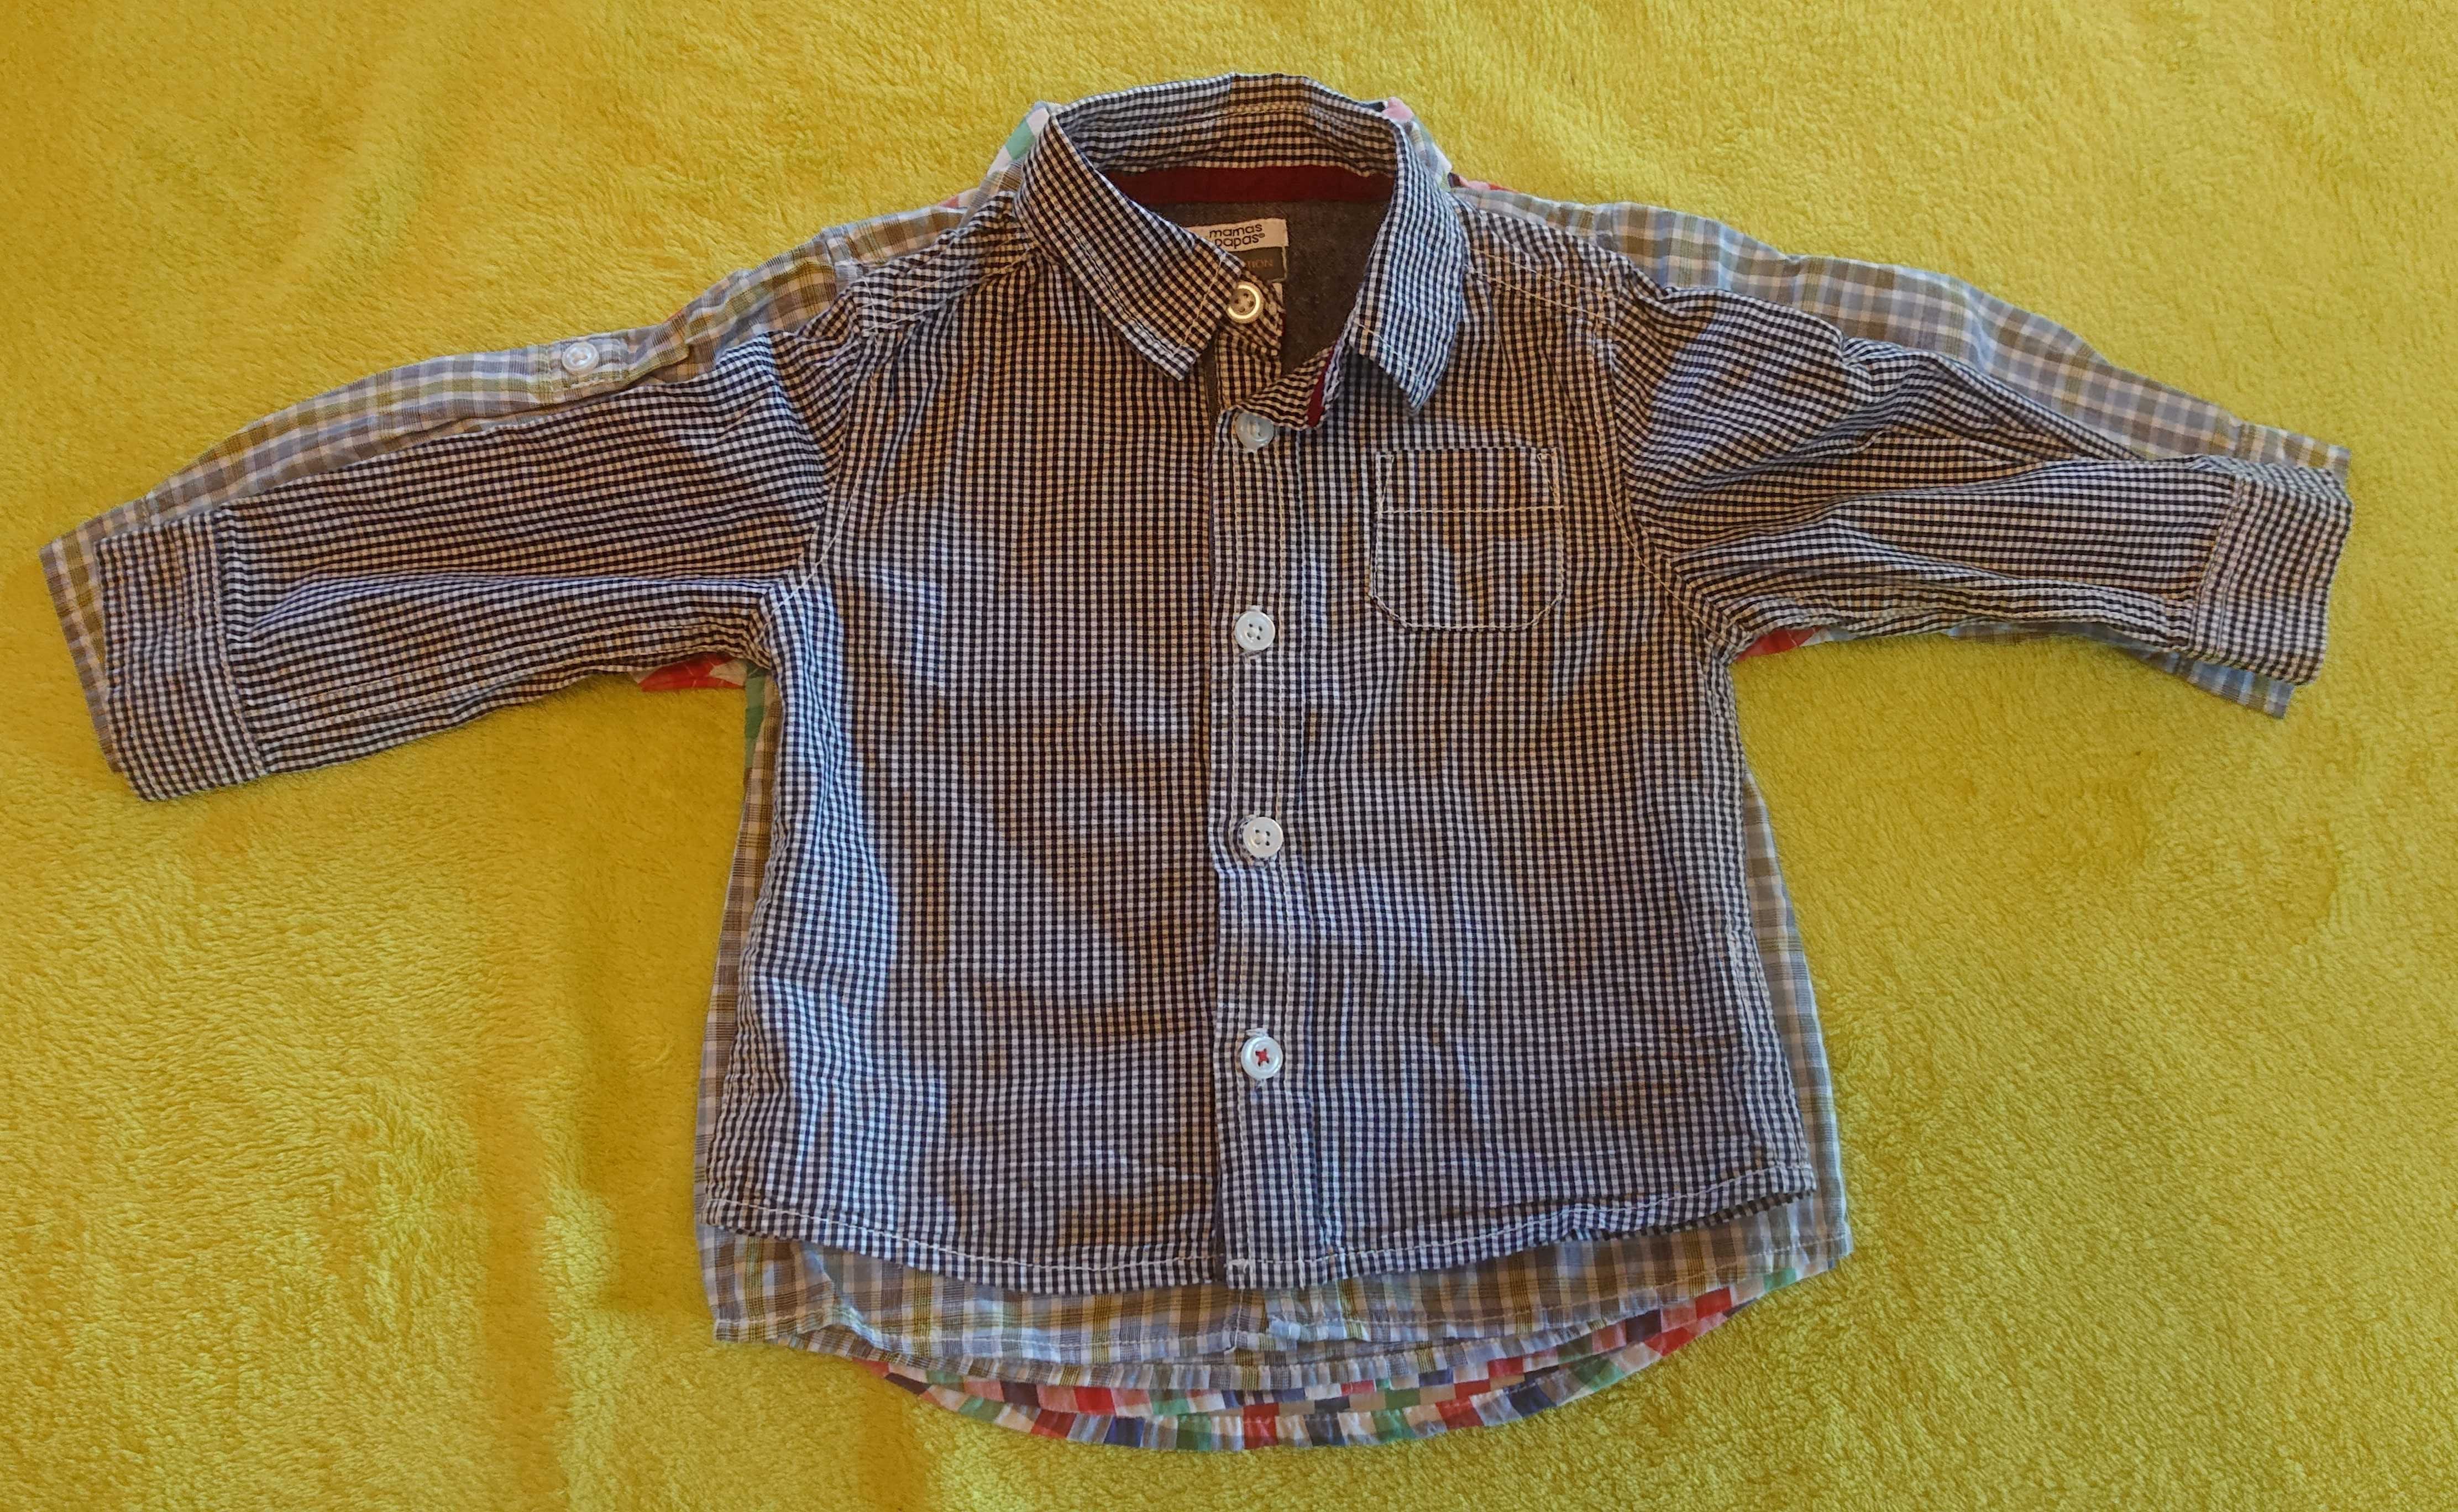 3 x koszula / Mamas & papas / Zara baby / Schnizler / ok. 74